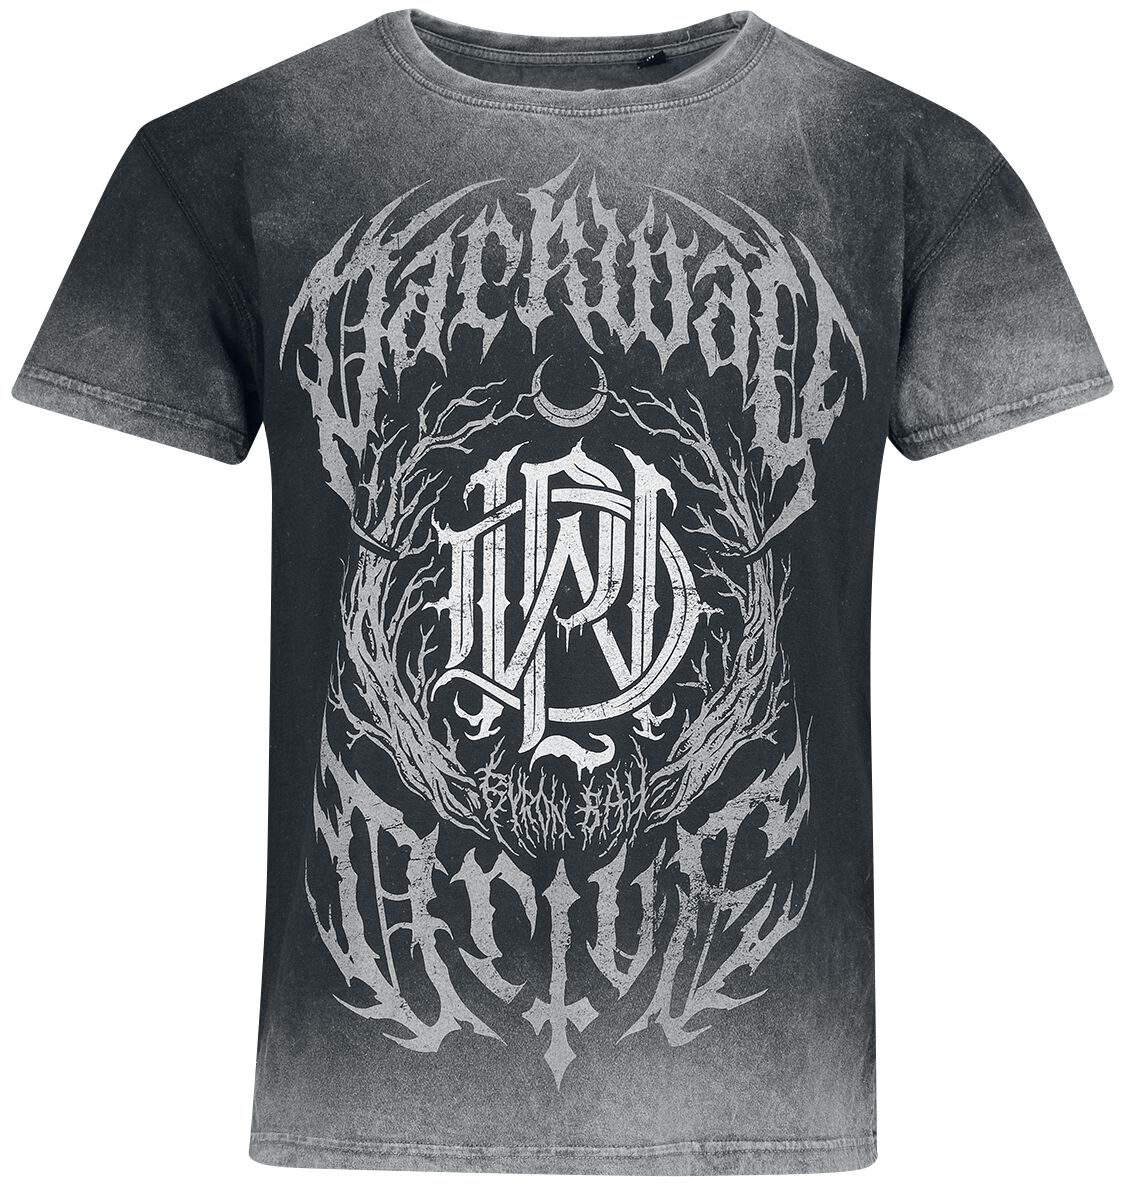 Parkway Drive T-Shirt - Metal Crest - S bis XXL - für Männer - Größe XL - dunkelgrau/hellgrau  - Lizenziertes Merchandise!